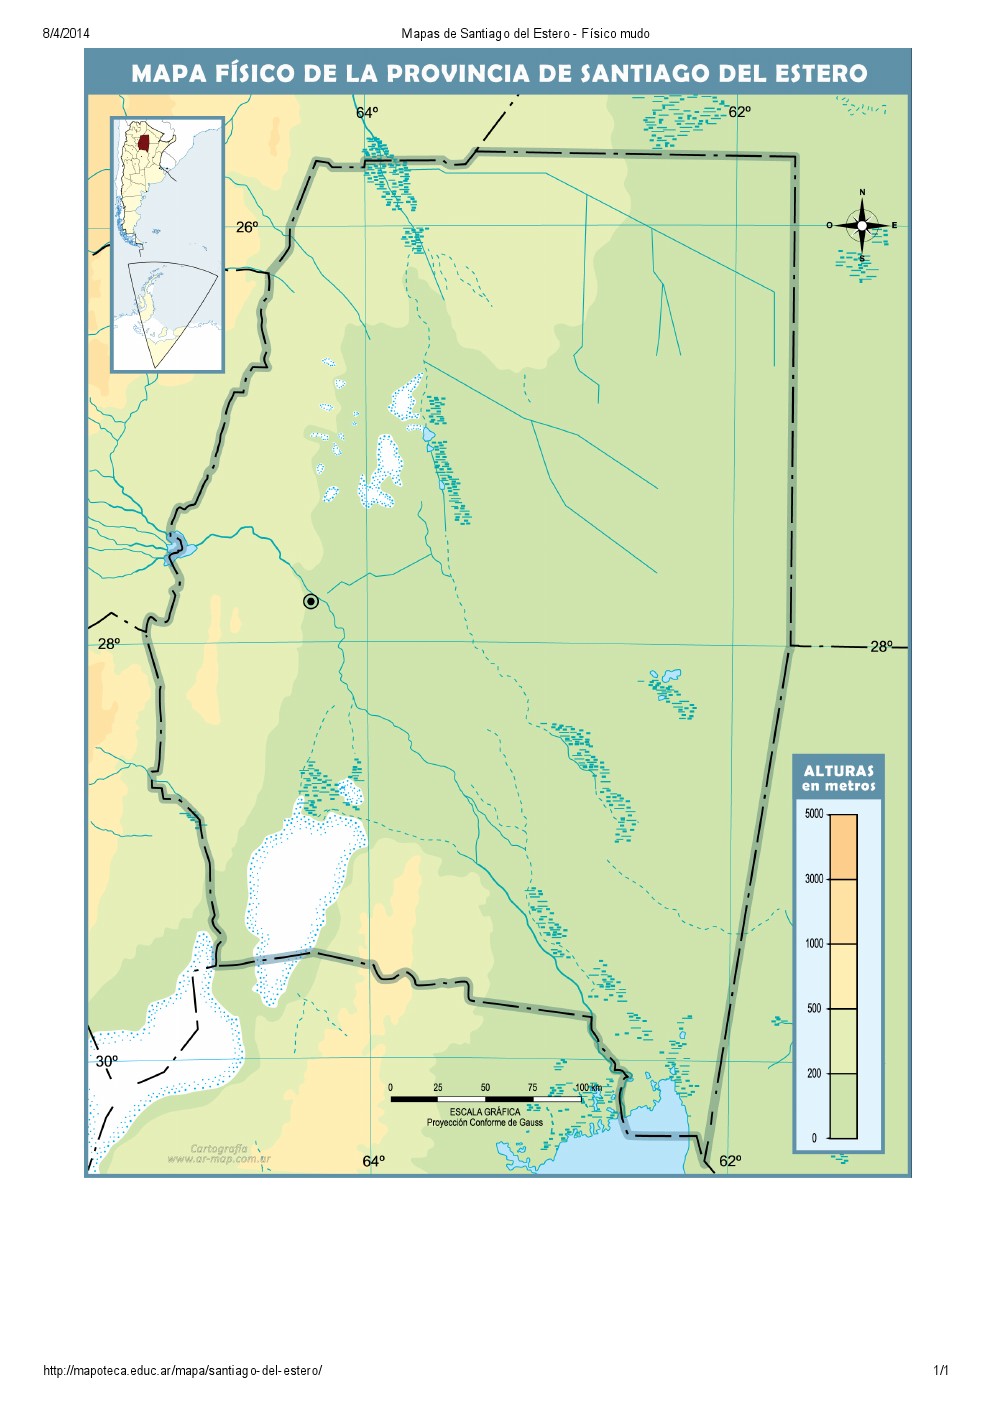 Mapa mudo de ríos de Santiago del Estero. Mapoteca de Educ.ar